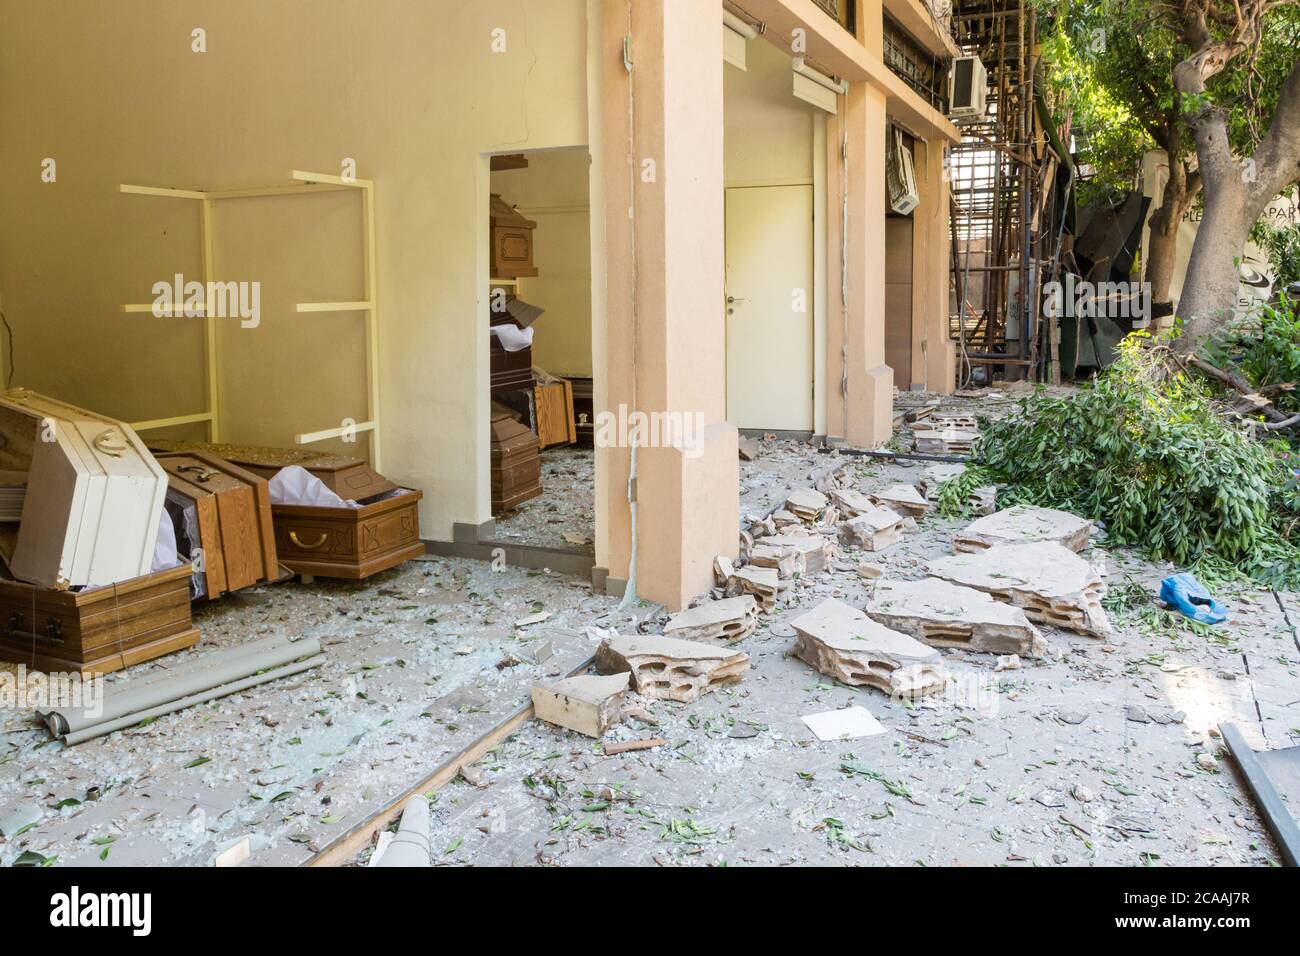 La boutique de cercueils et de cercueils a été détruite après une explosion massive qui a secoué Beyrouth le 4 août 2020, à Achrafieh/Beyrouth, au Liban Banque D'Images